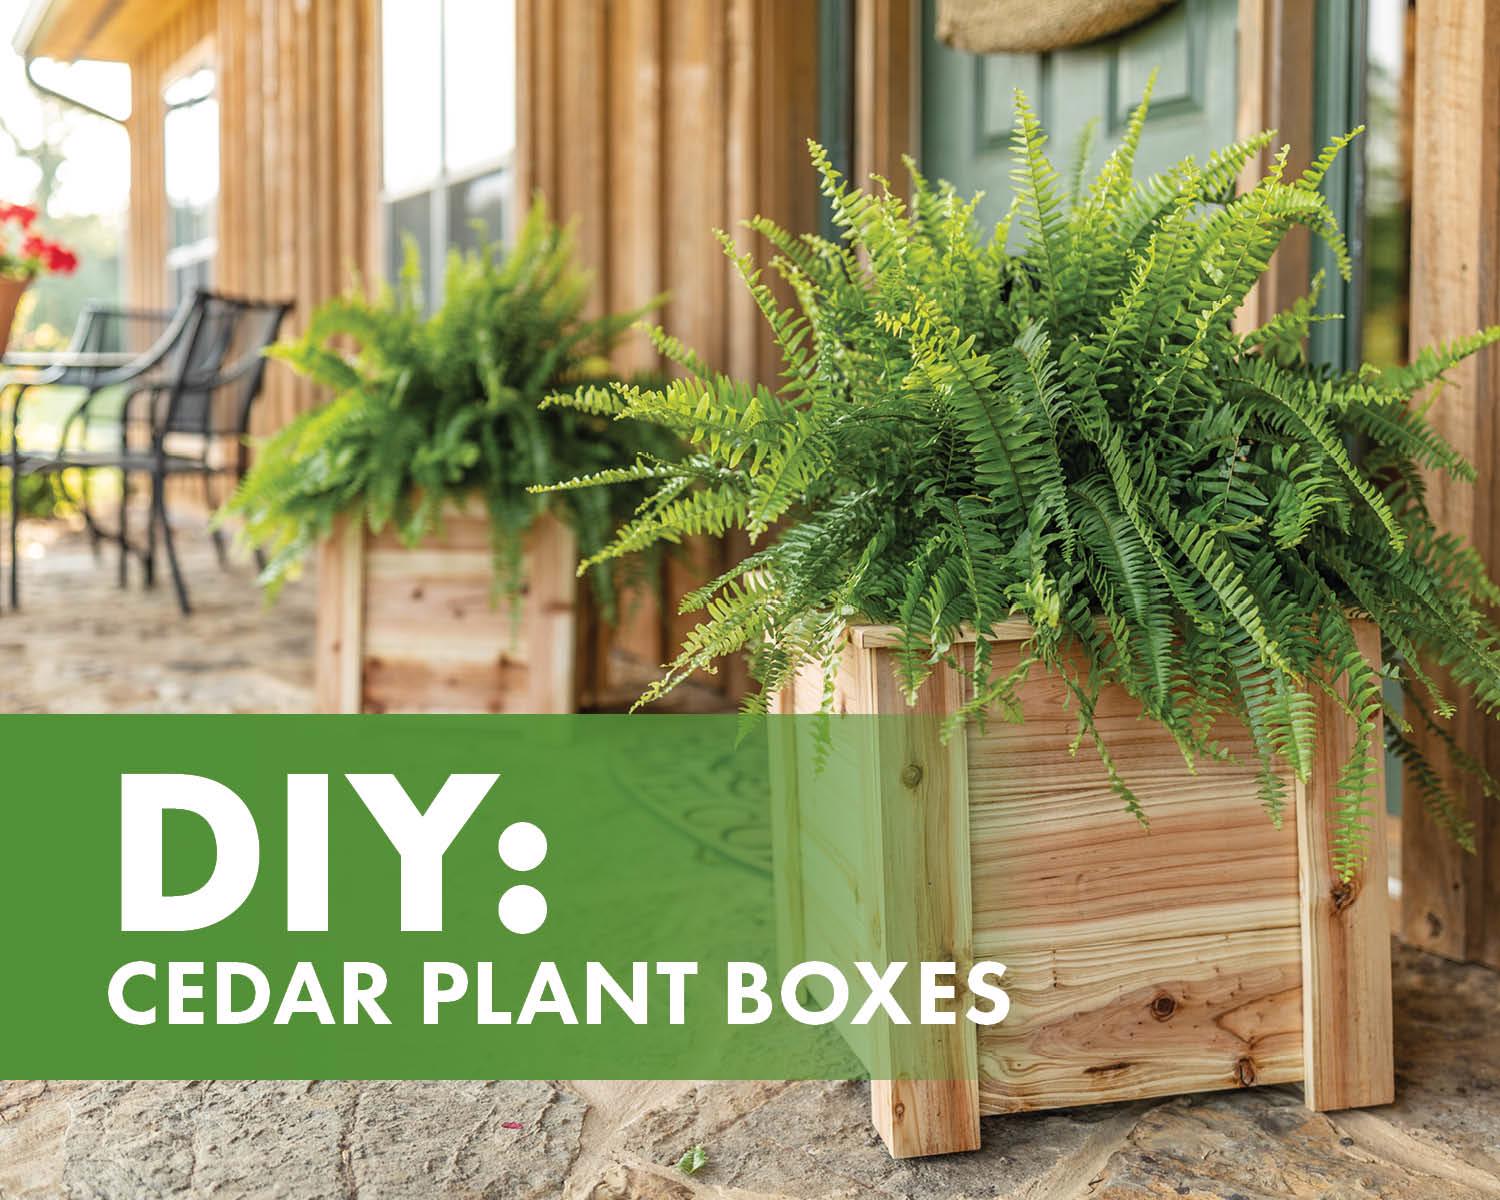 DIY Cedar Plant Boxes